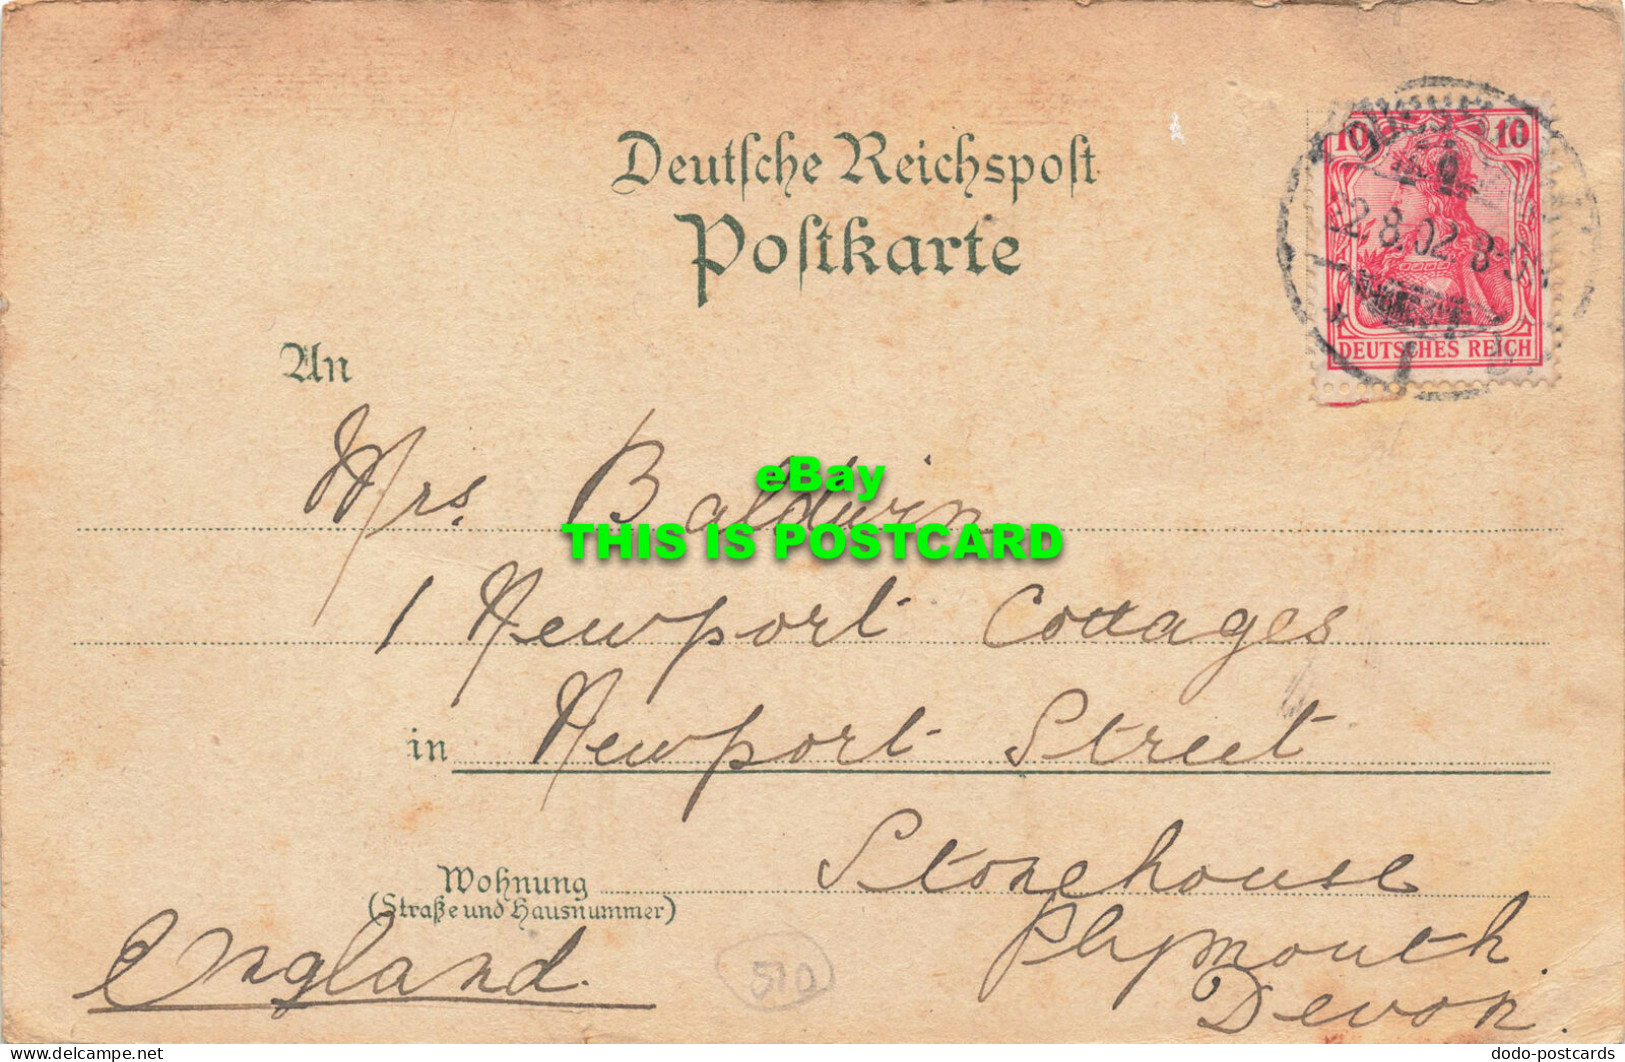 R584661 Gruss Aus Dusseldorf. Konigsallee. Carl Garte. 1902 - Monde